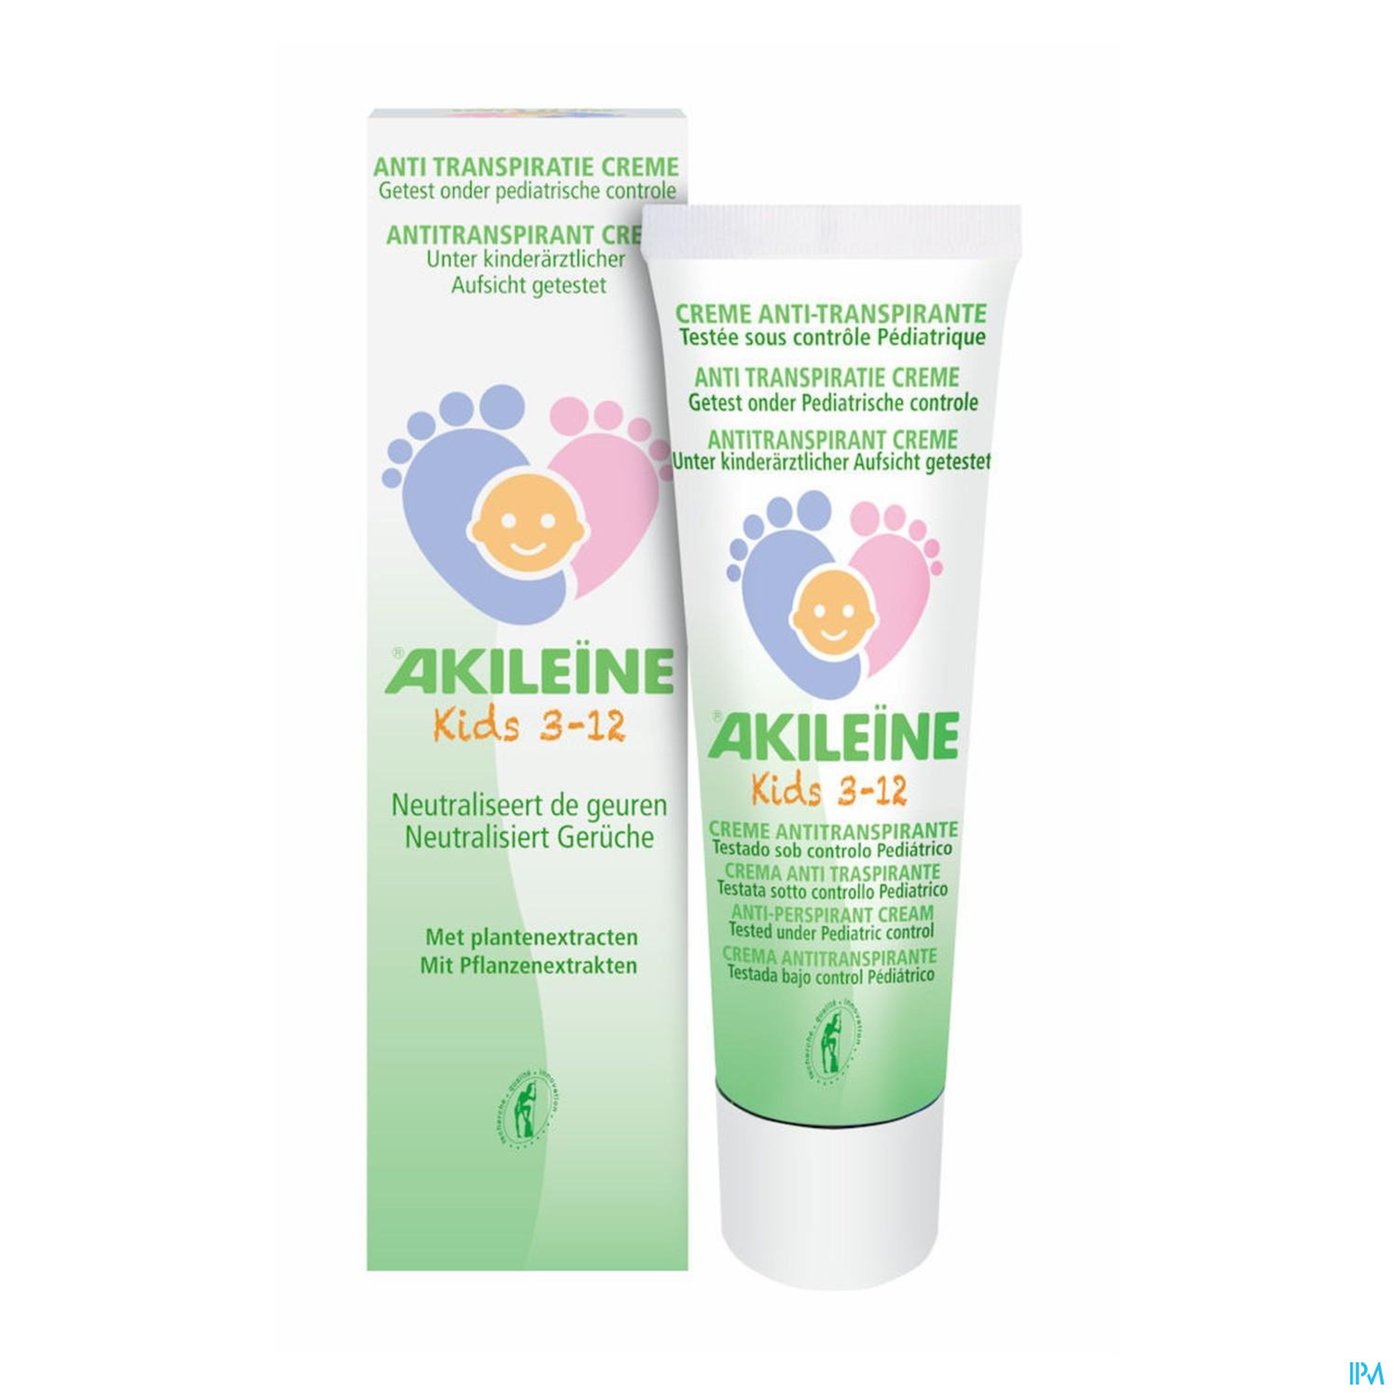 Akileine Kids Creme A/transpiratie 75ml productshot